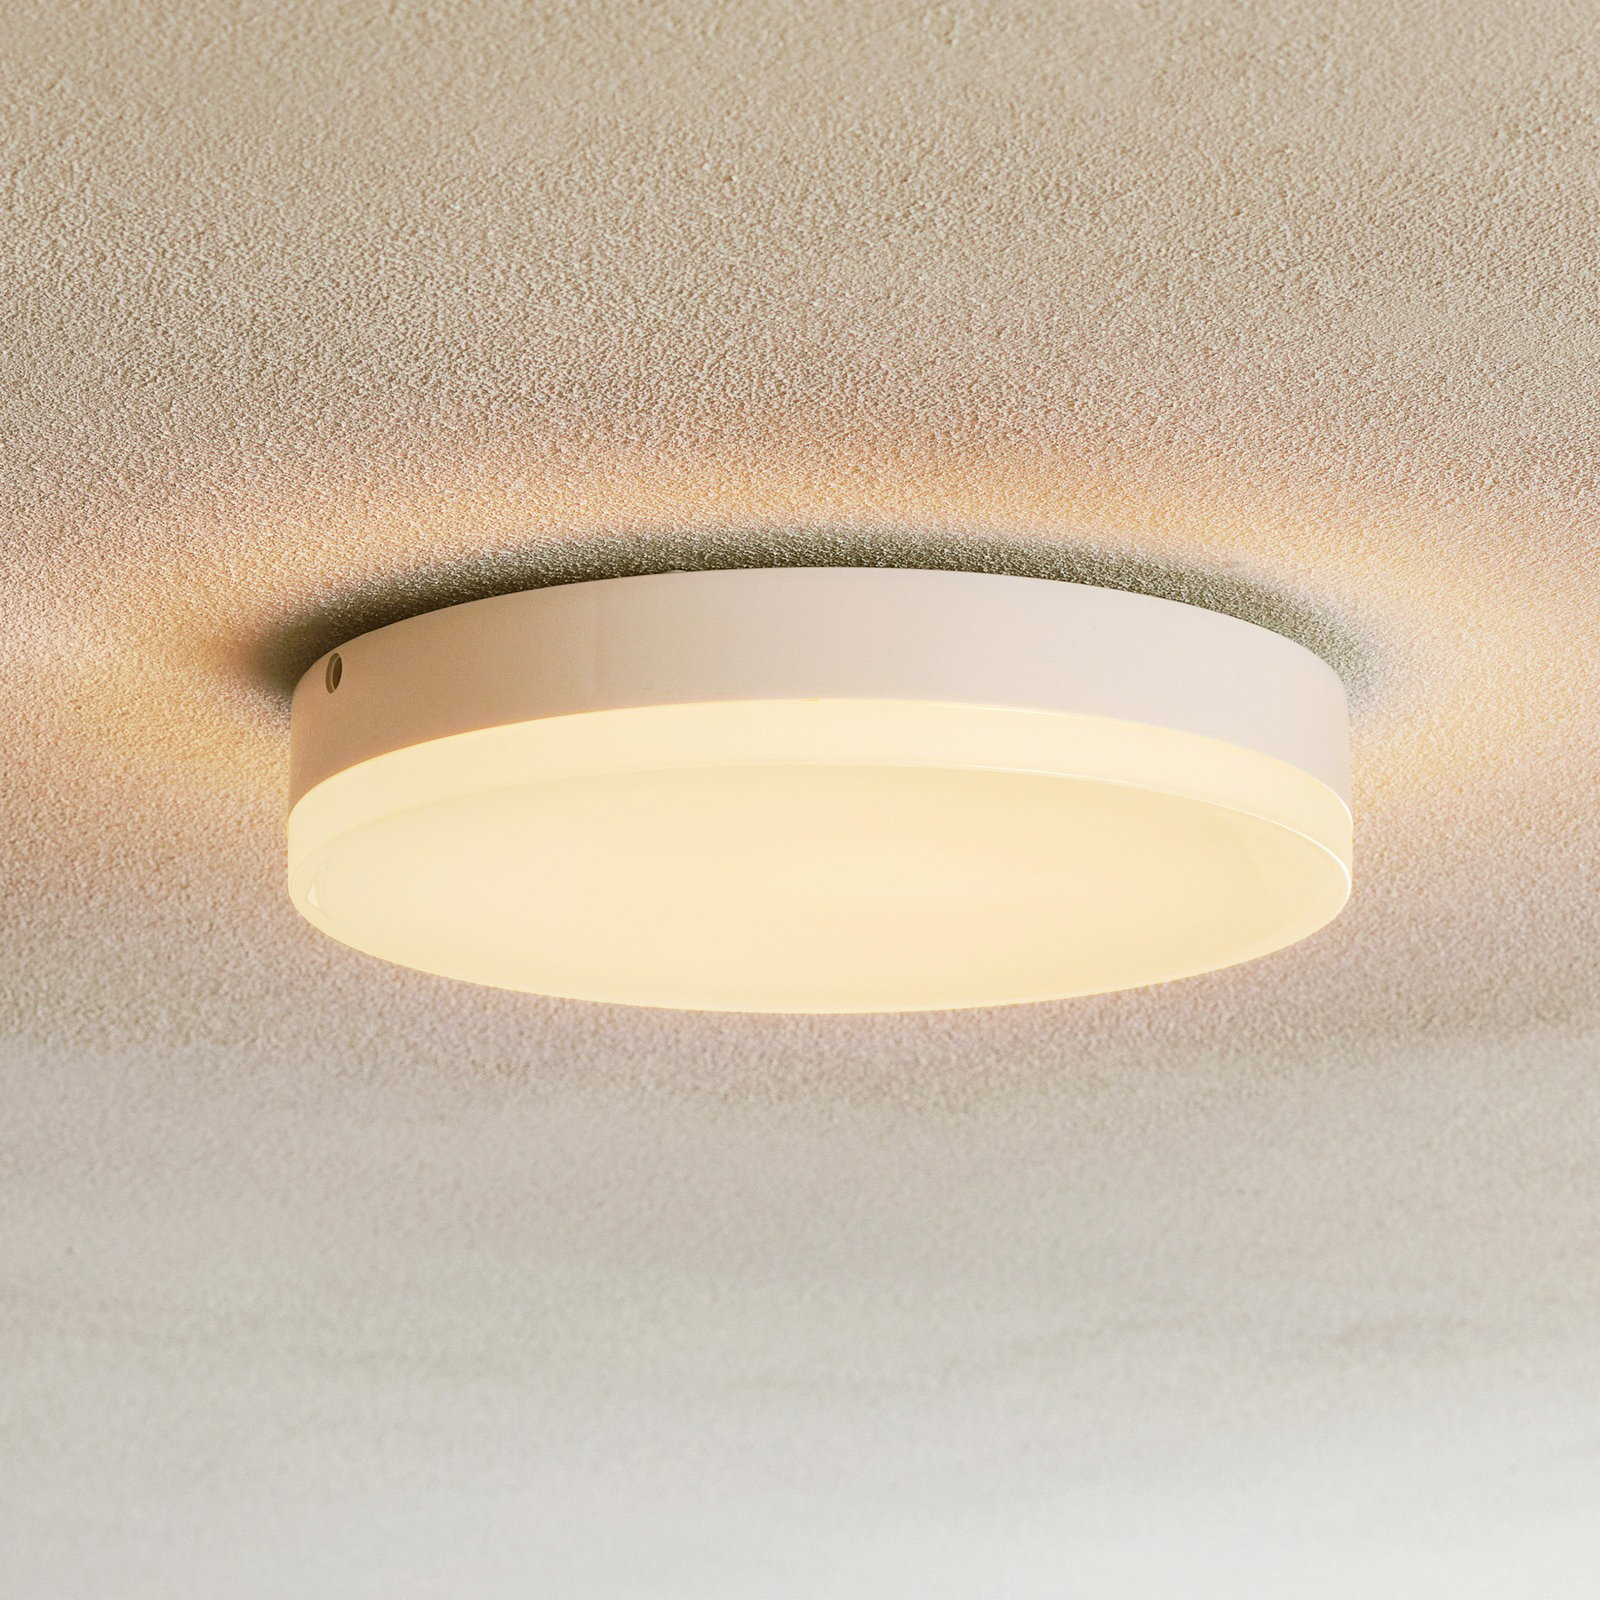 Naxo LED ceiling light, 3,000K, IP44